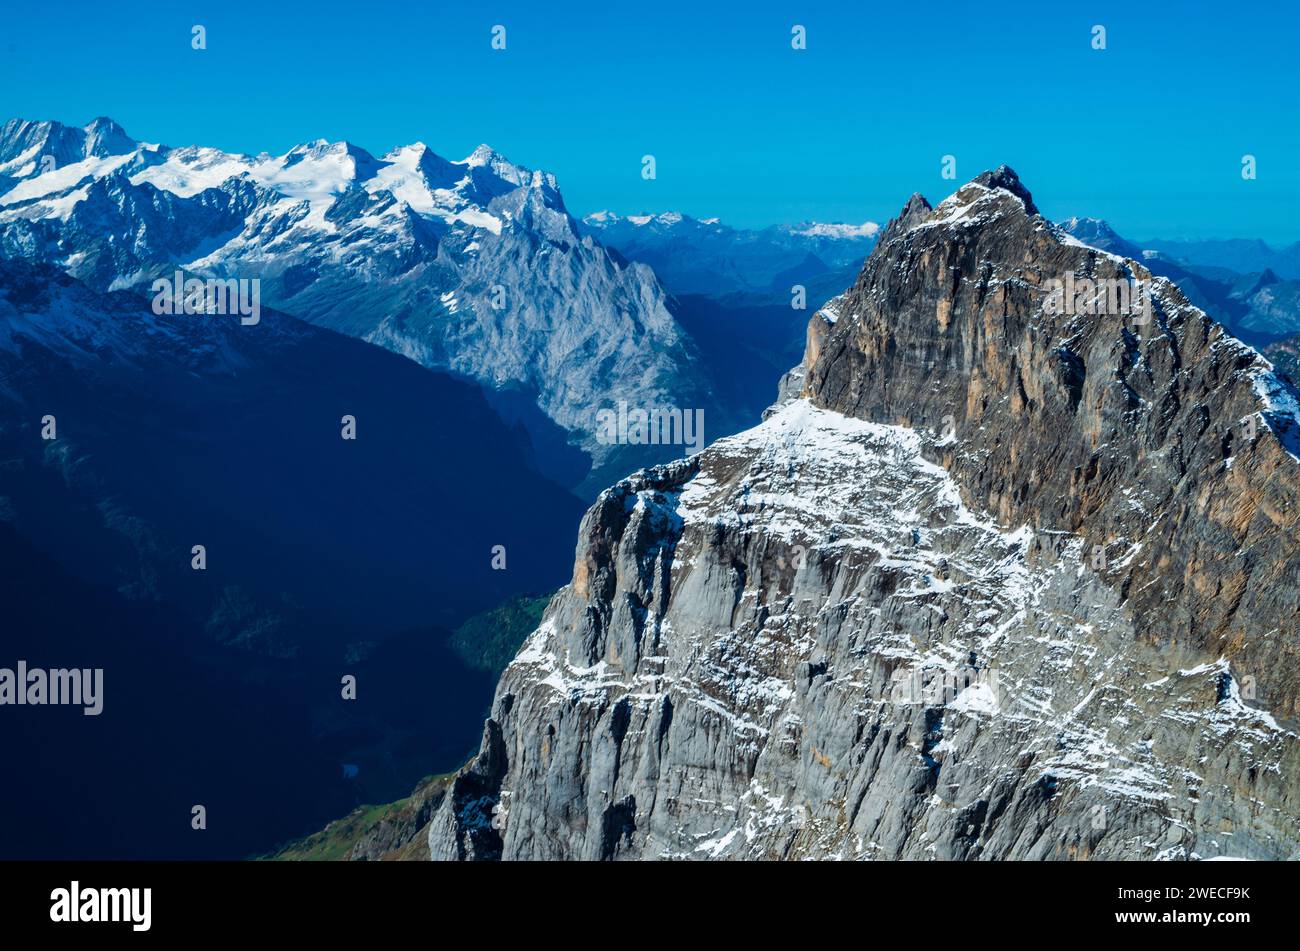 Monte Titlis, Lucerna, Svizzera: Le cime innevate e la bellezza alpina si fondono in un panorama mozzafiato. Foto Stock